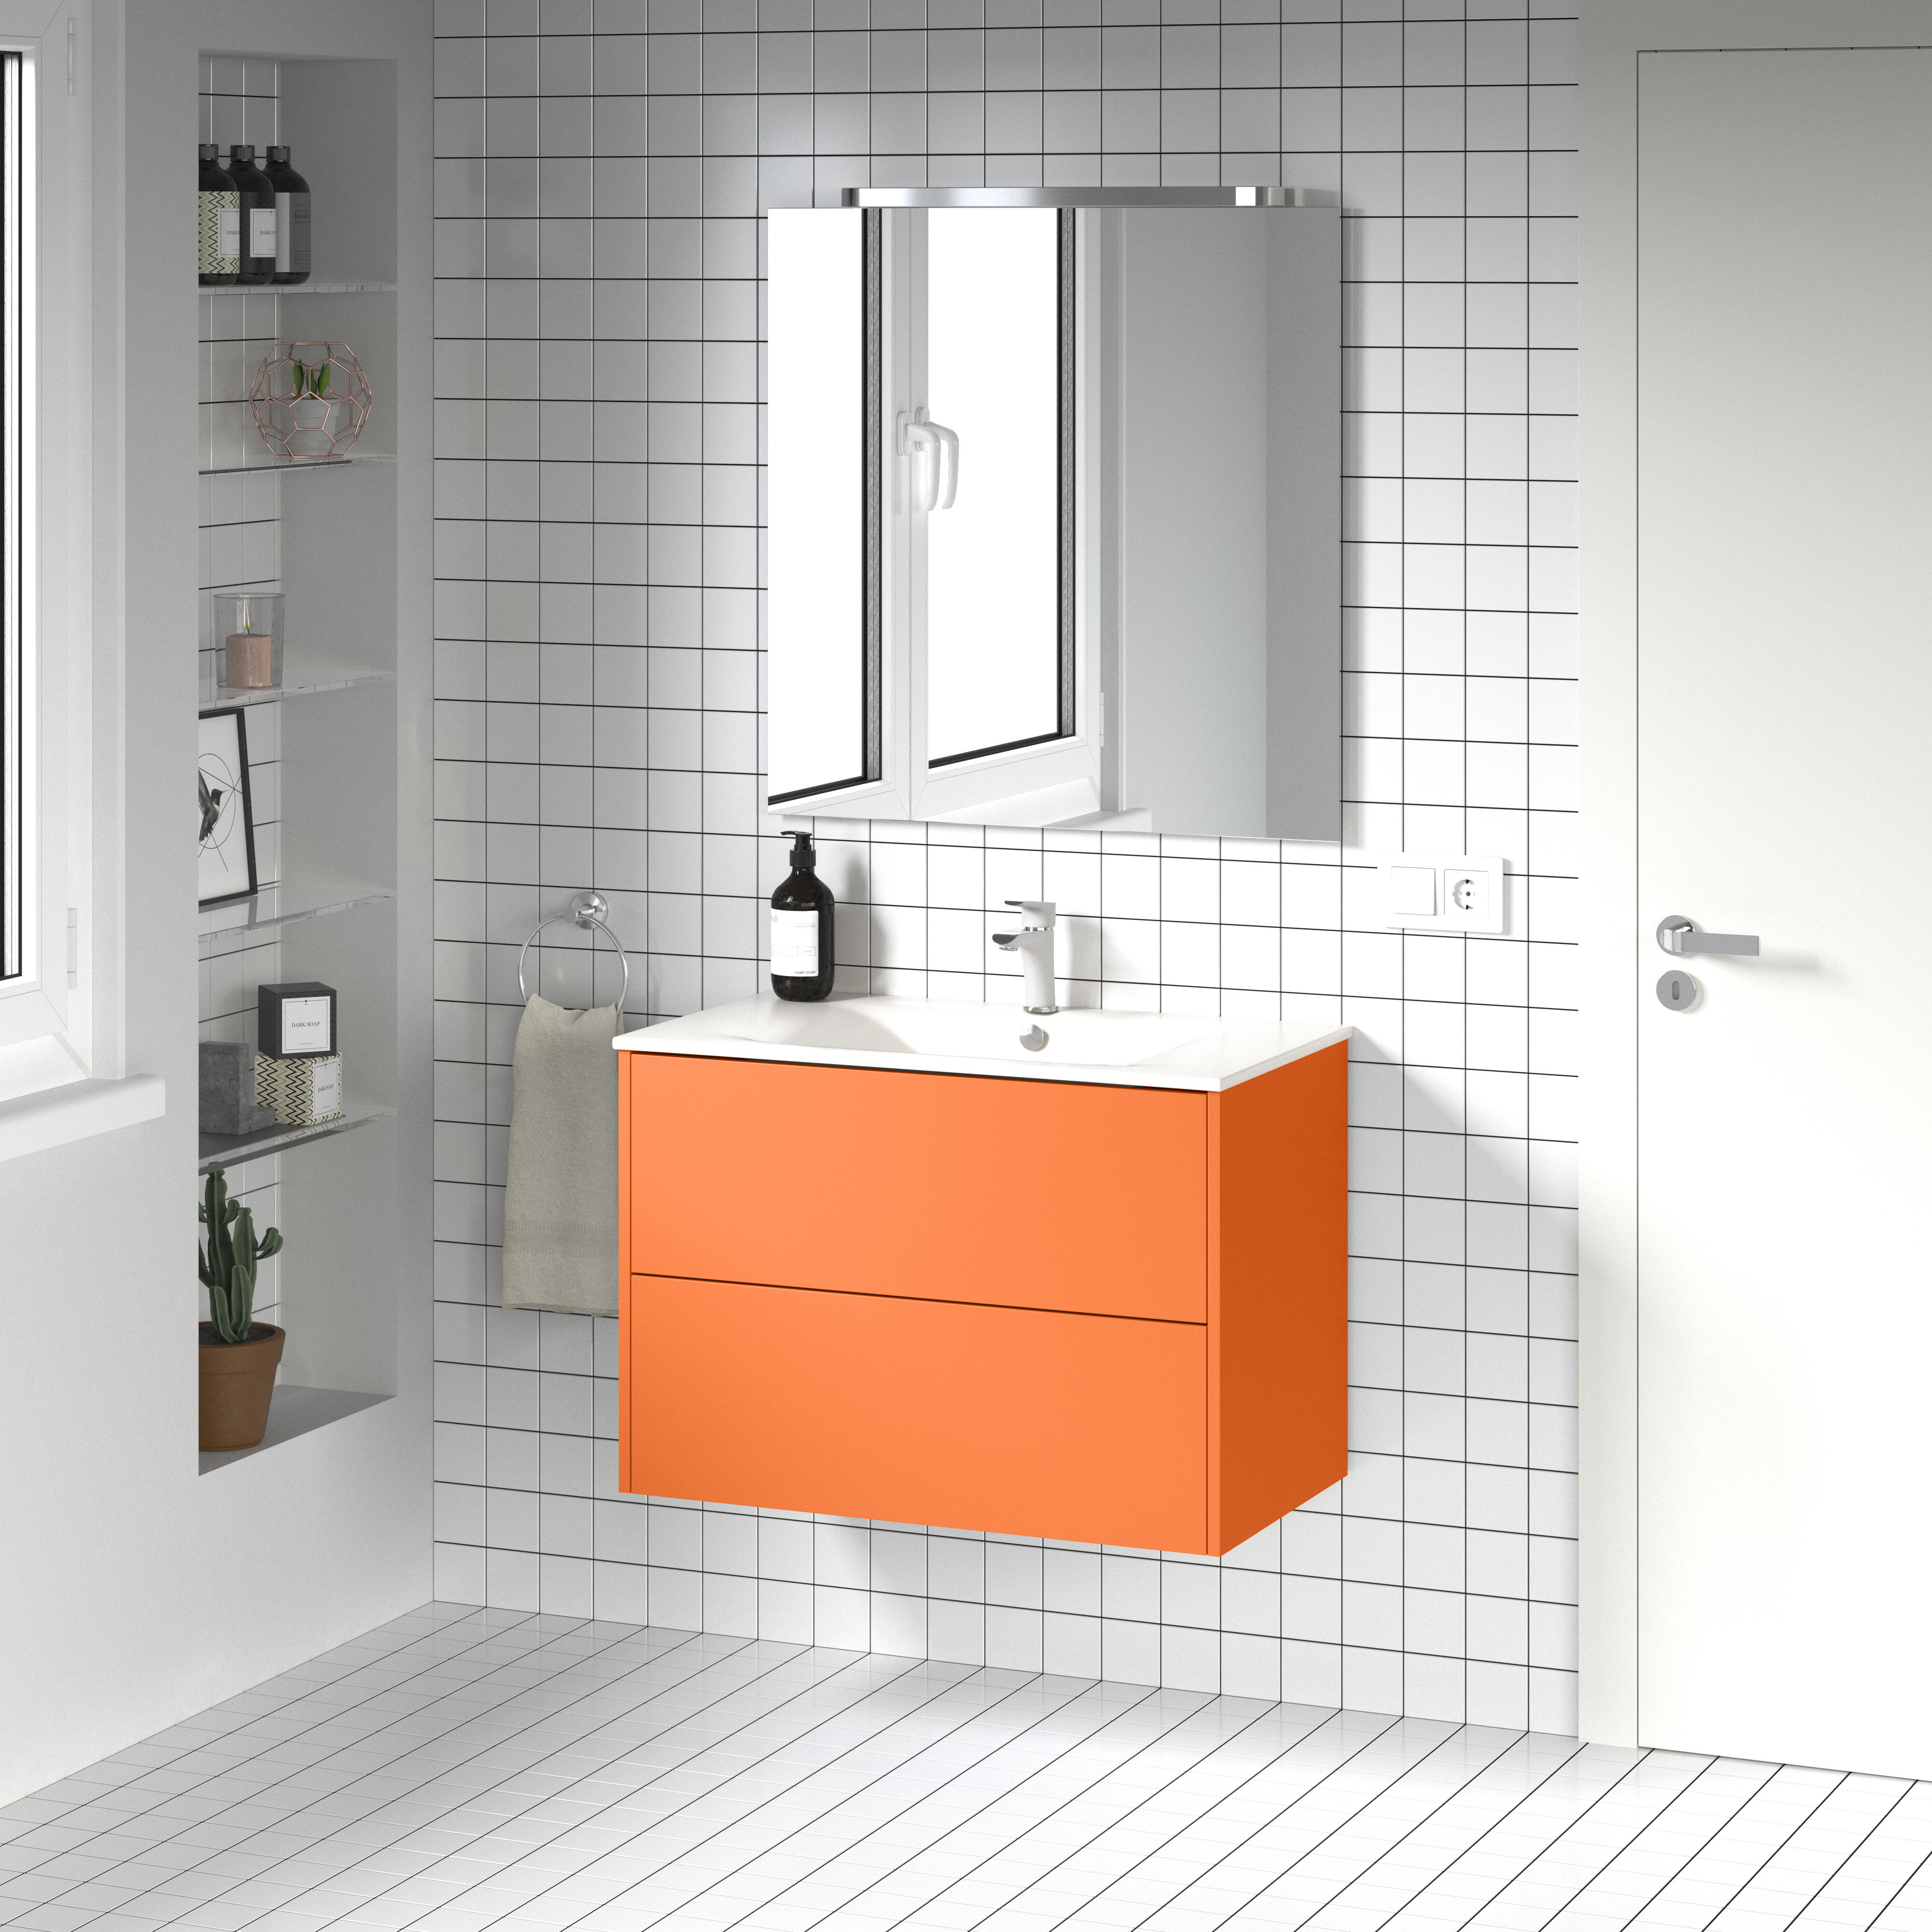 Mueble de baño con lavabo dreams naranja 80x45 cm